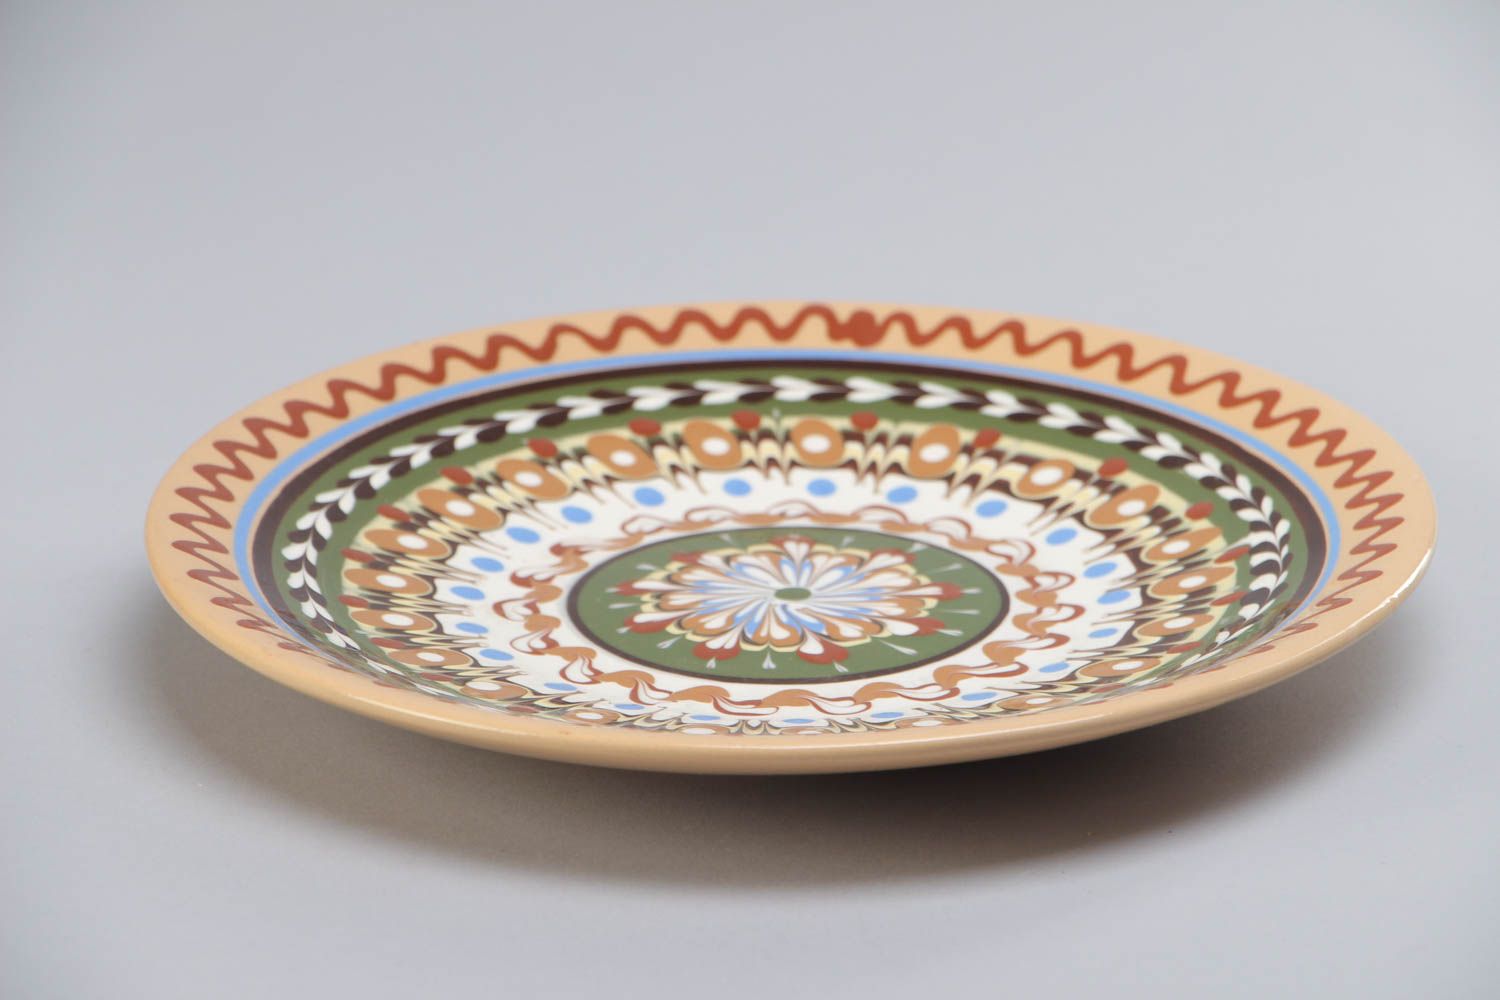 Assiette plate en terre cuite ronde grande peinte à motif originale faite main photo 2